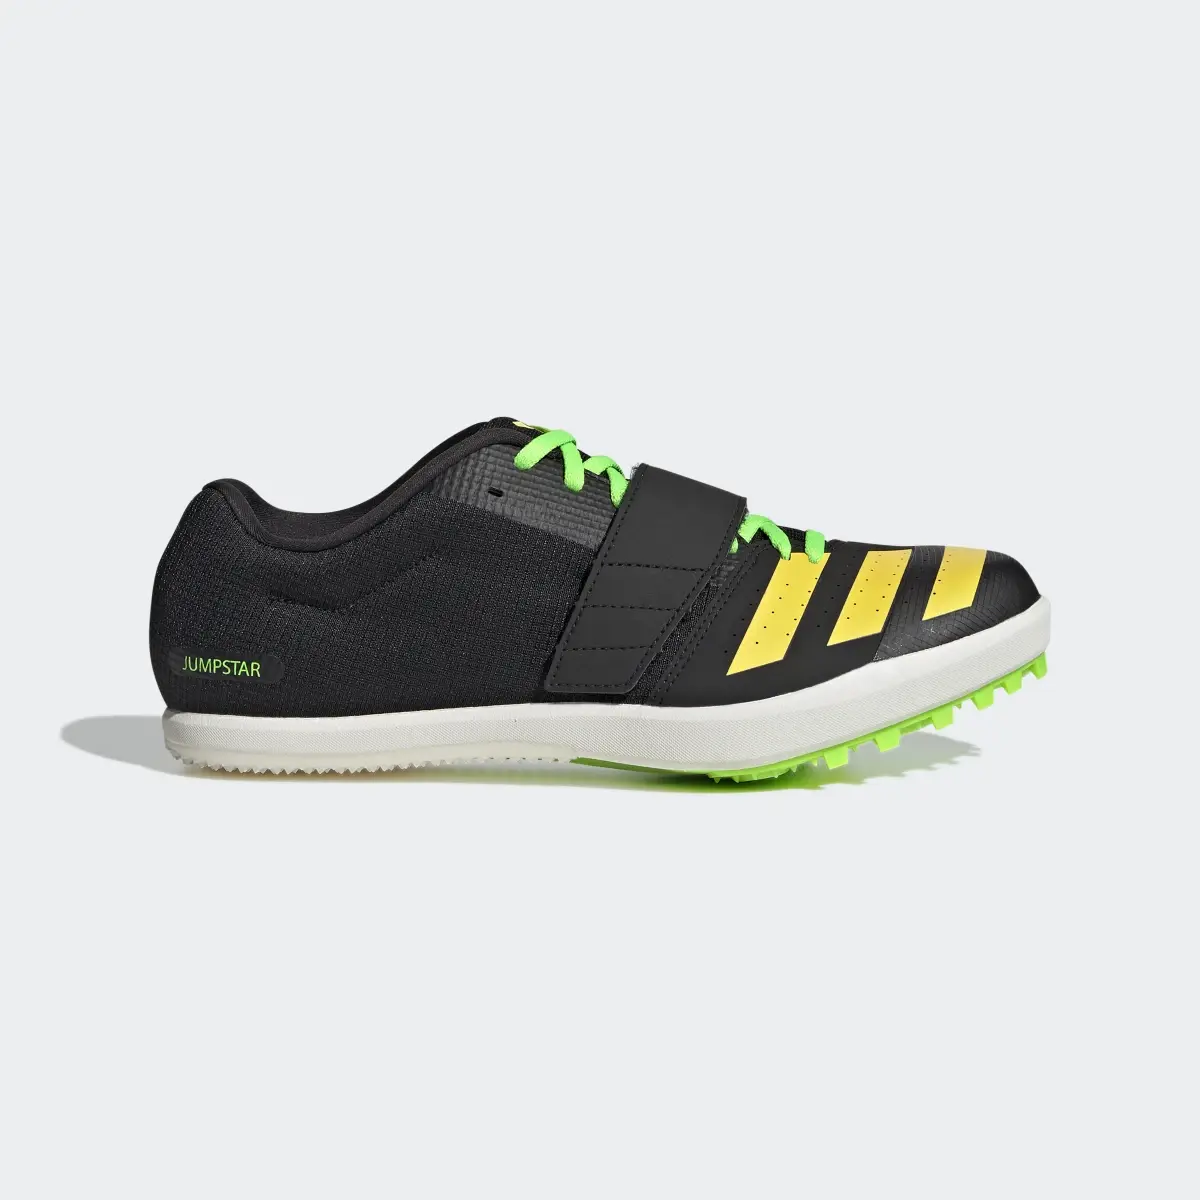 Adidas Jumpstar Shoes. 2